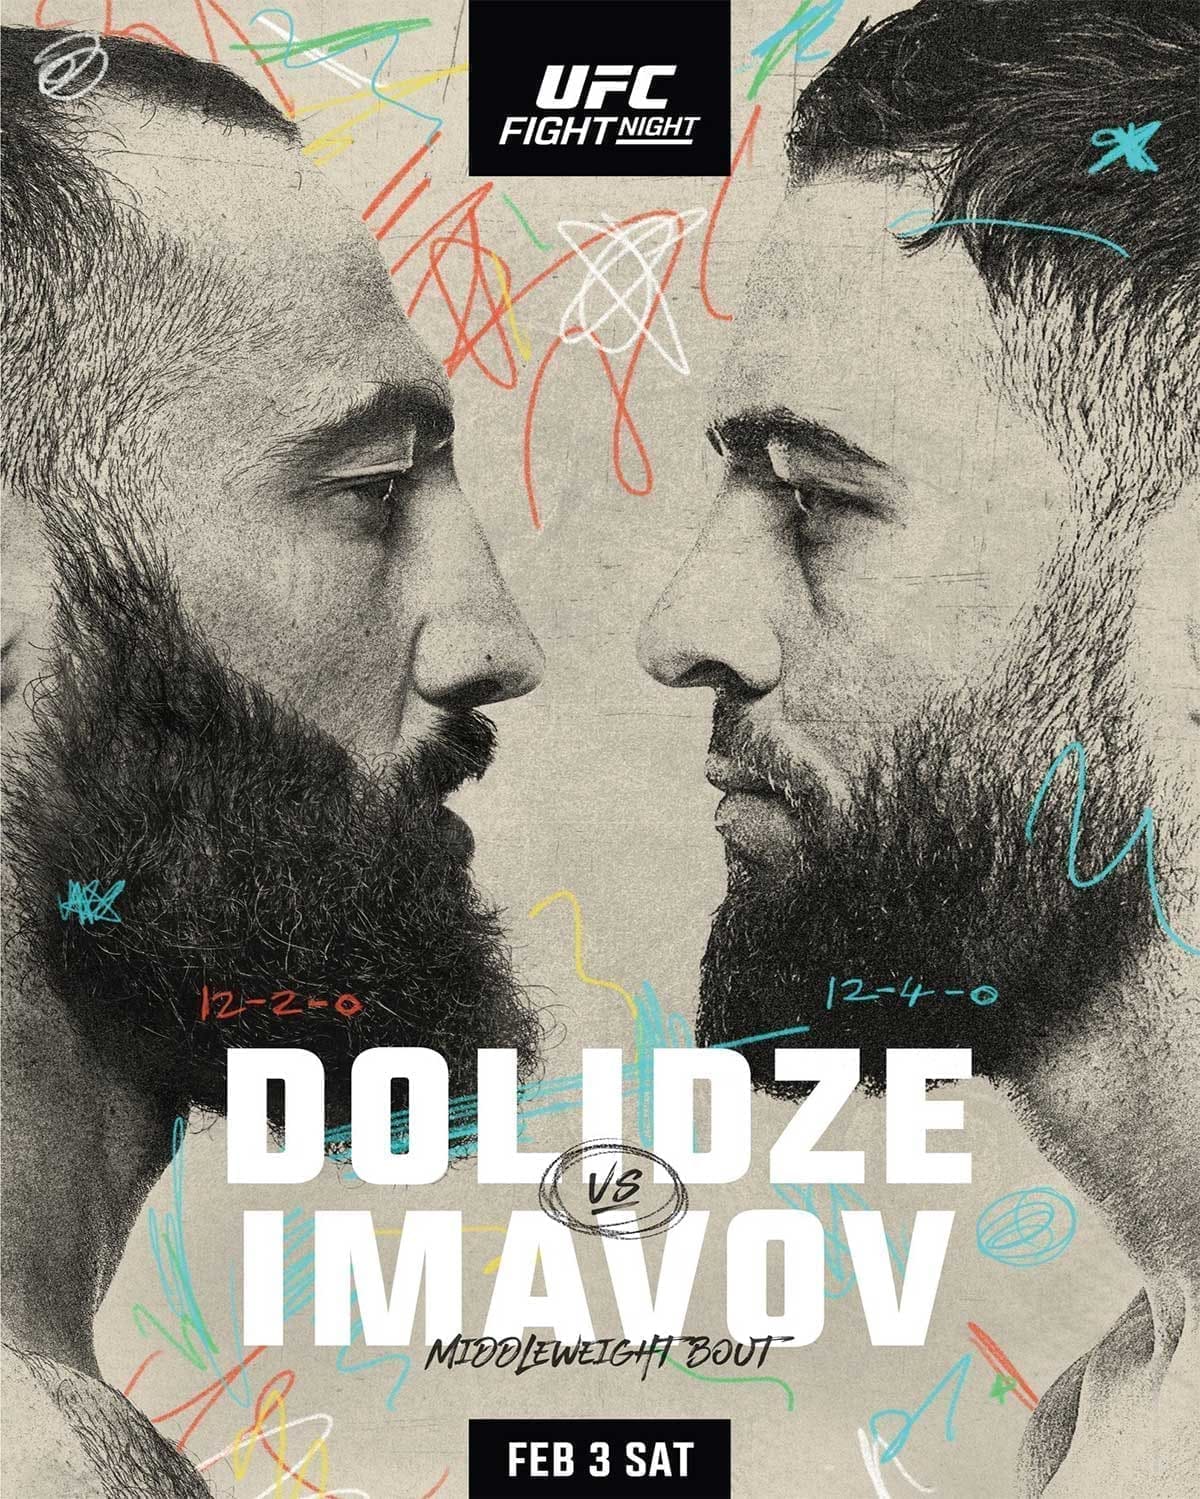 UFC Fight Night 235: Долидзе - Имавов дата проведения, кард, участники и результаты